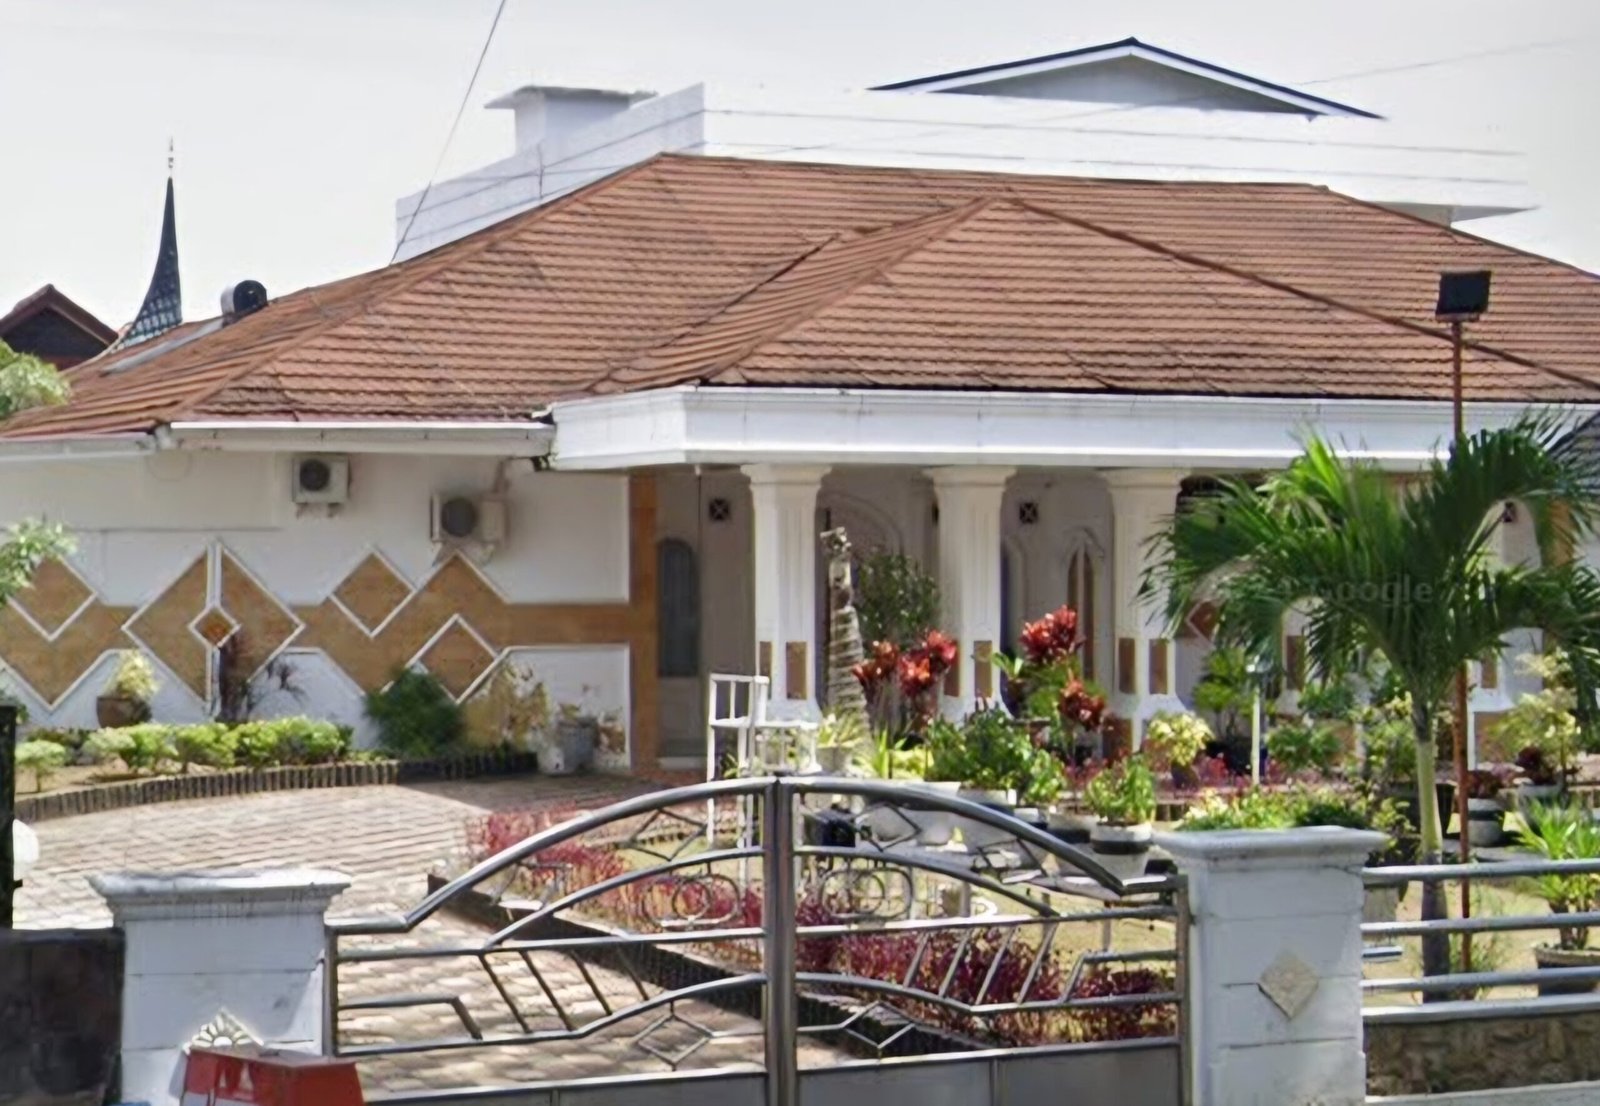 Rumah dinas Wali Kota Padang